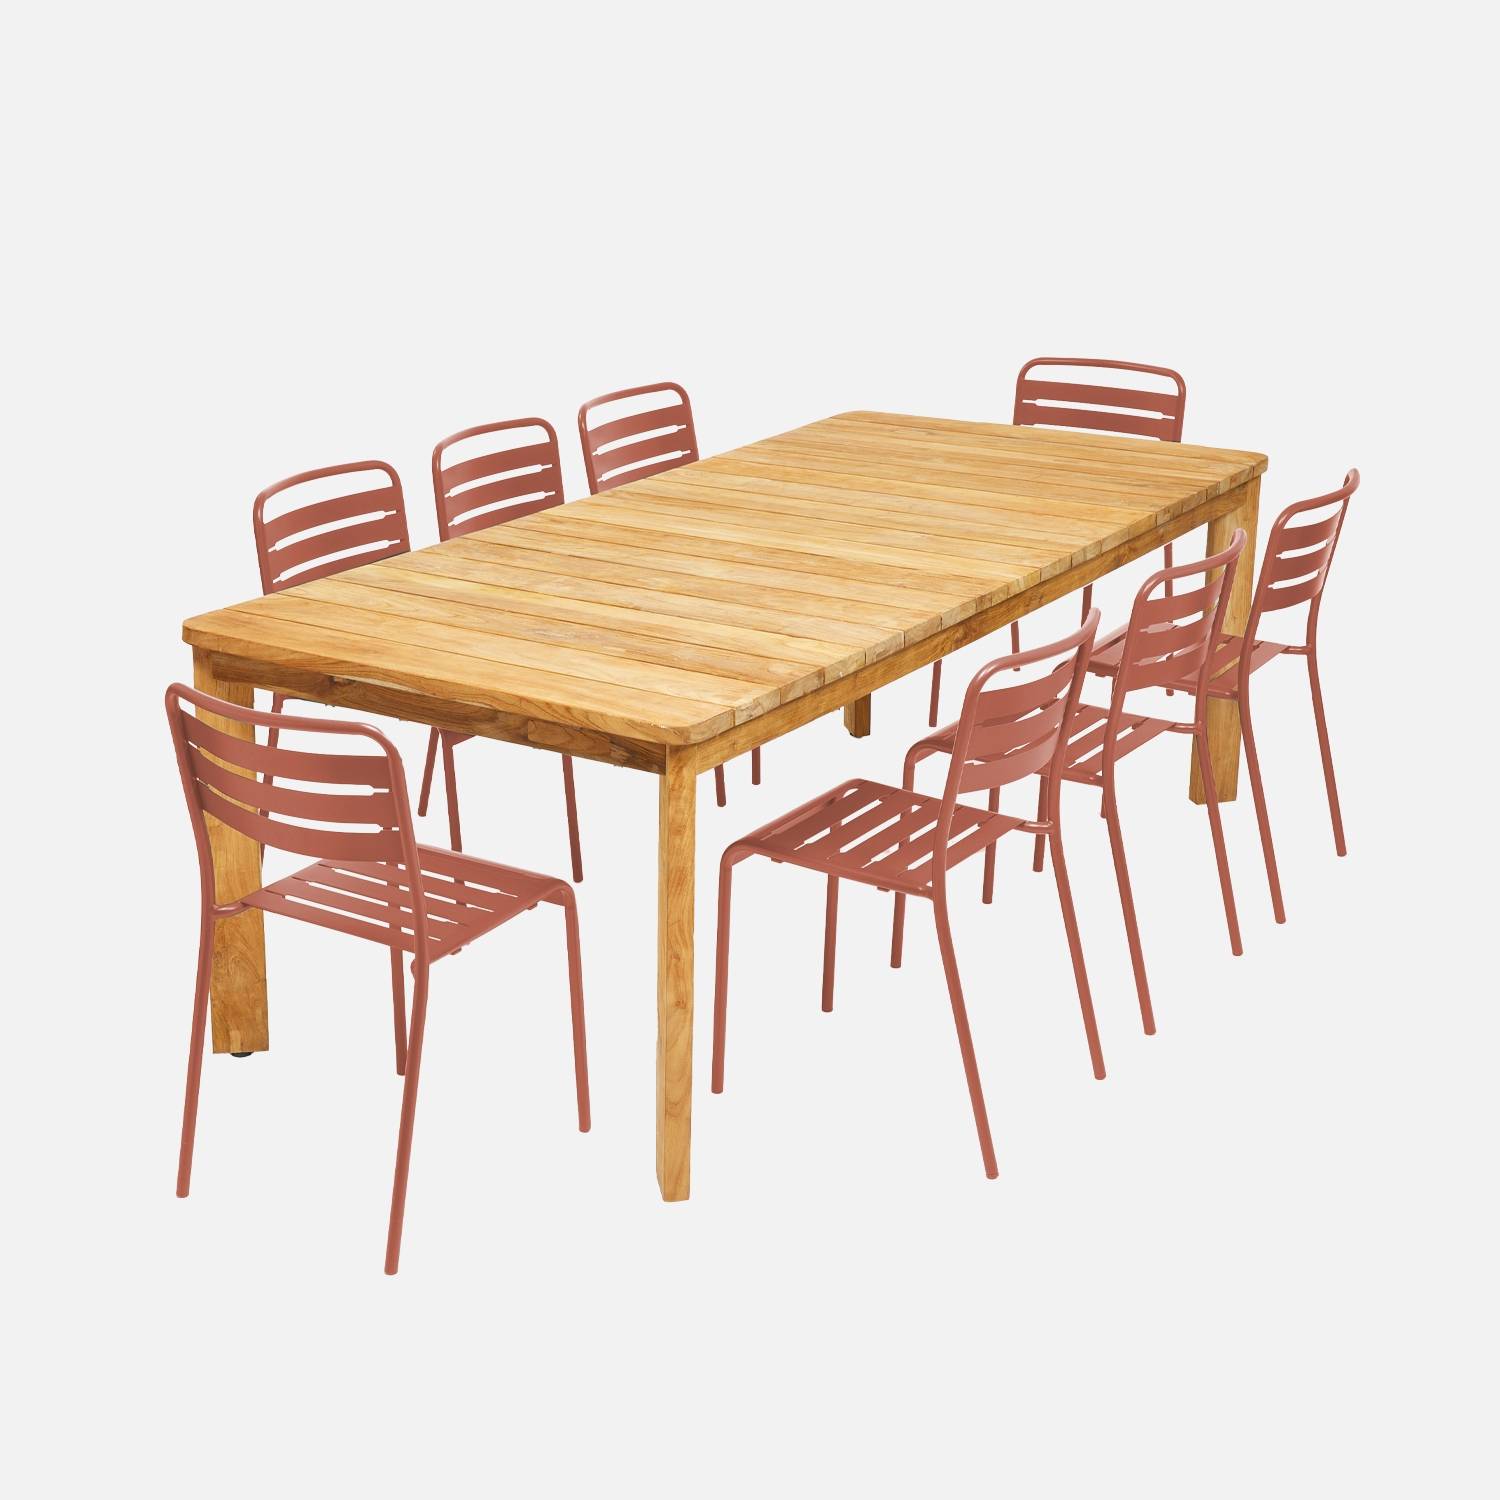 220cm teruggewonnen teakhouten tafel + 8 terracotta I sweeek stoelen